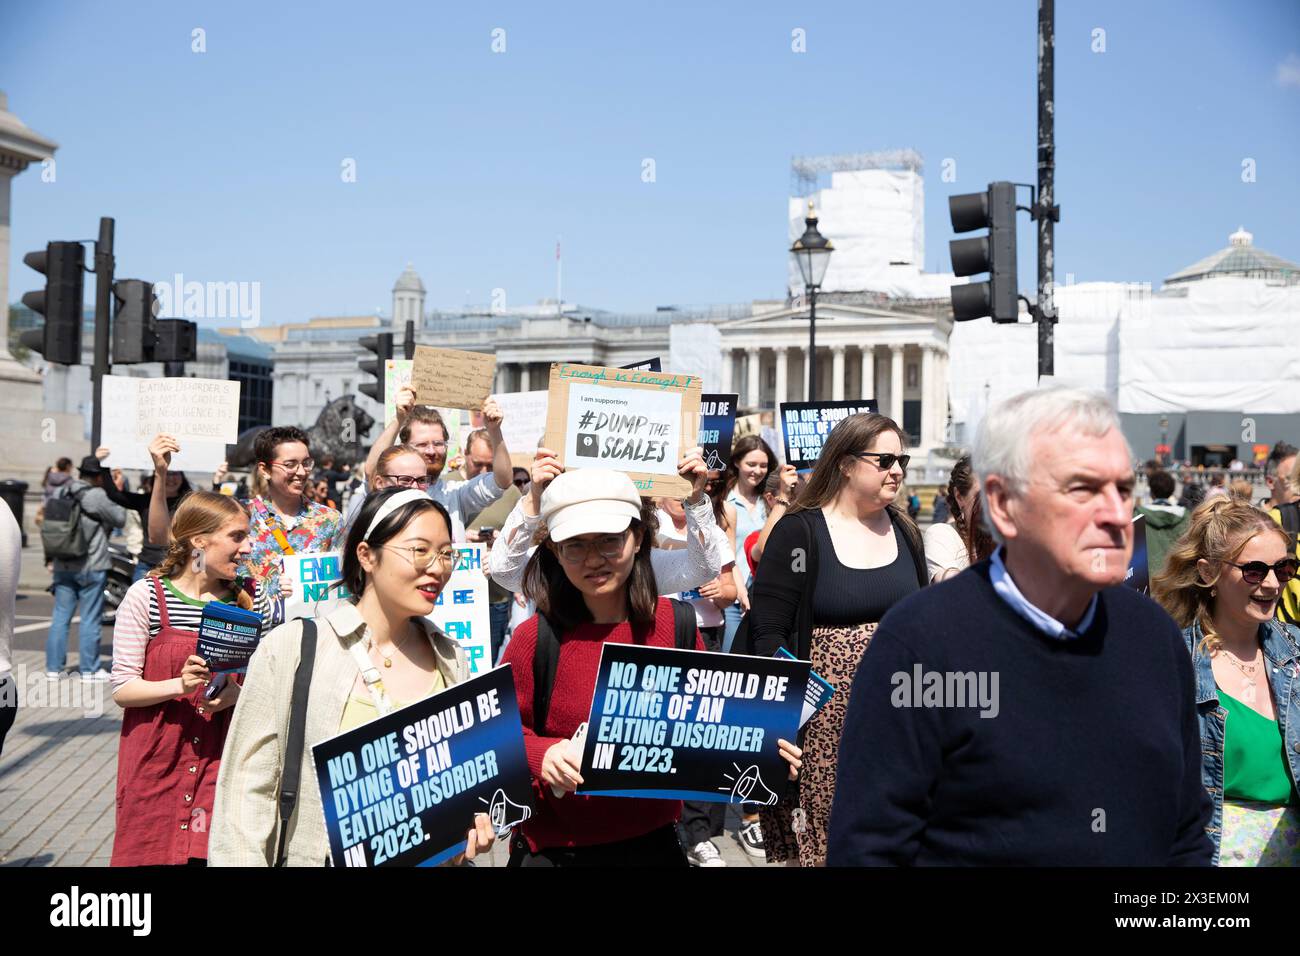 Les participants se rassemblent pour les personnes touchées par des troubles de l'alimentation dans/autour de Trafalgar Square, Londres. Banque D'Images